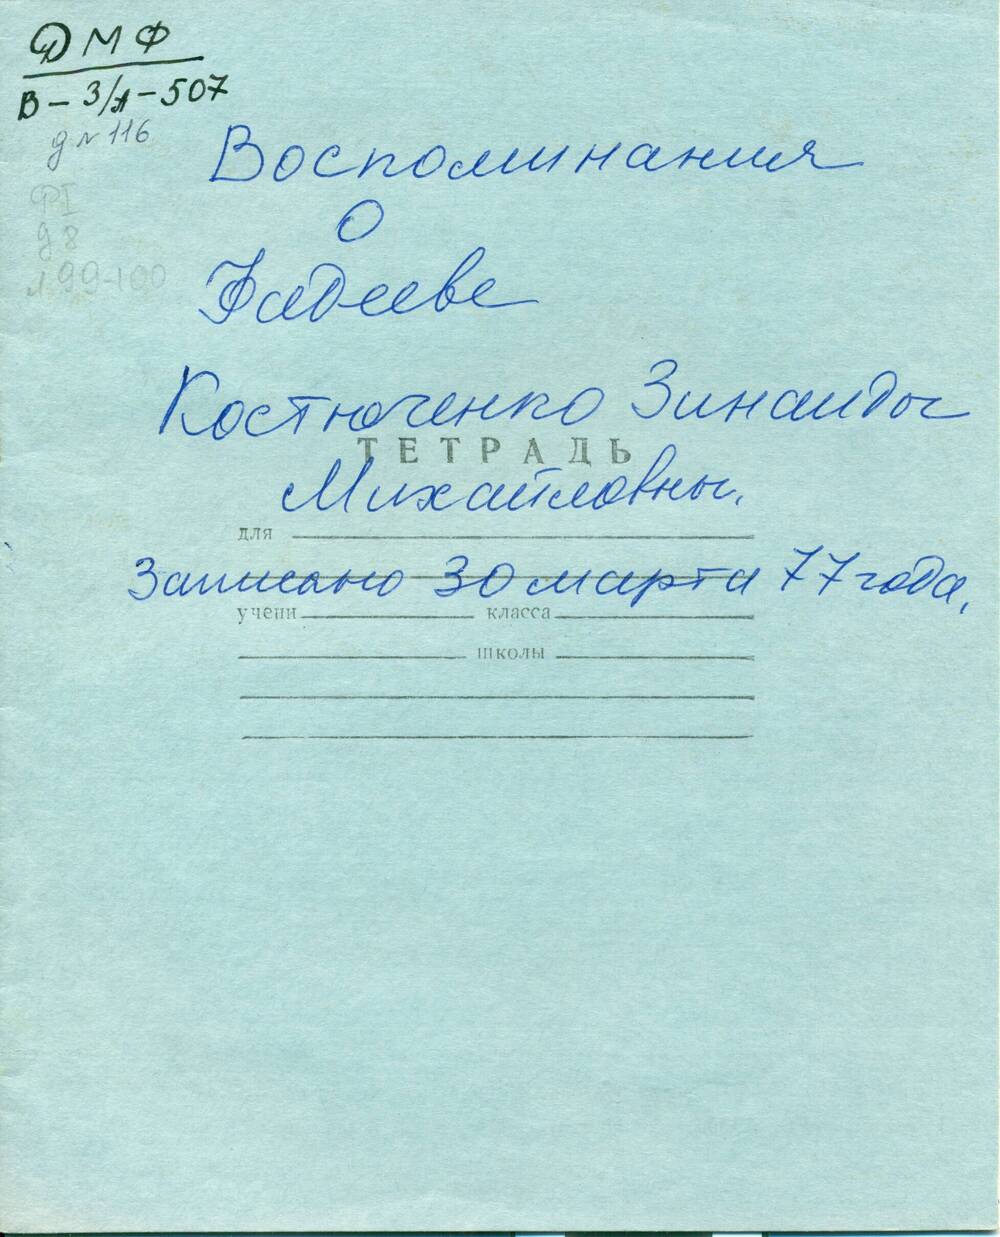 Воспоминания З. Костюченко(Бадюк) о Чугуевке, встрече с А.А. Фадеевым в 1933г.